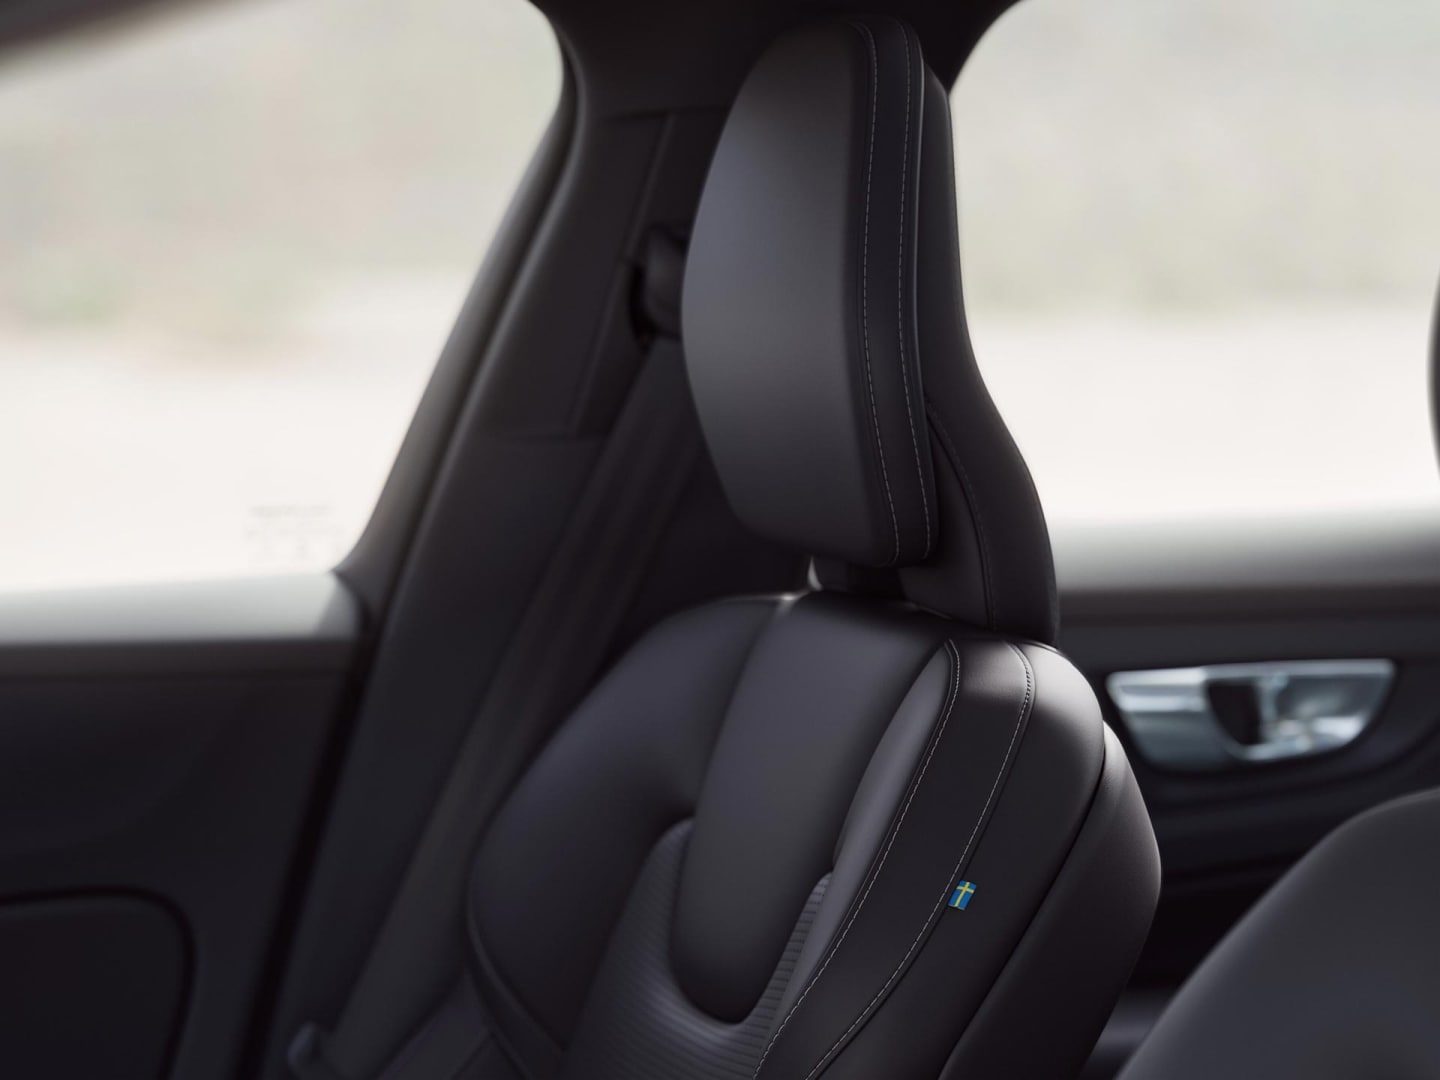 Asientos del copiloto y del conductor en cuero de napa ventilado color carbón del Volvo S60 híbrido enchufable.